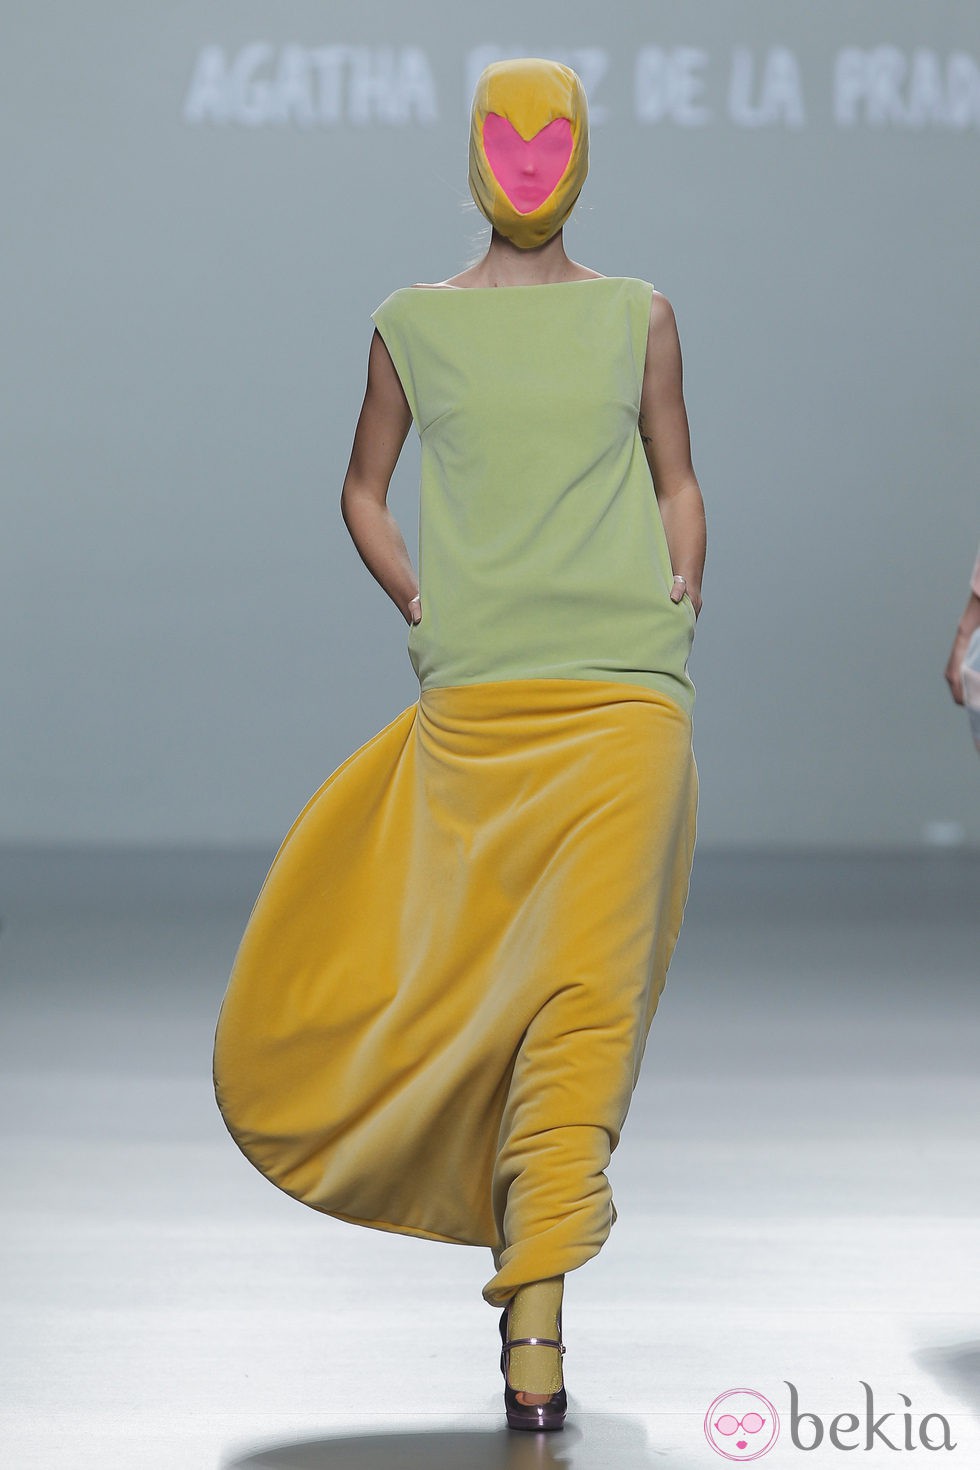 Vestido con falda amarilla de terciopelo de la colección otoño/invierno 2013/2014 de Ágatha Ruiz de la Prada en Madrid Fashion Week